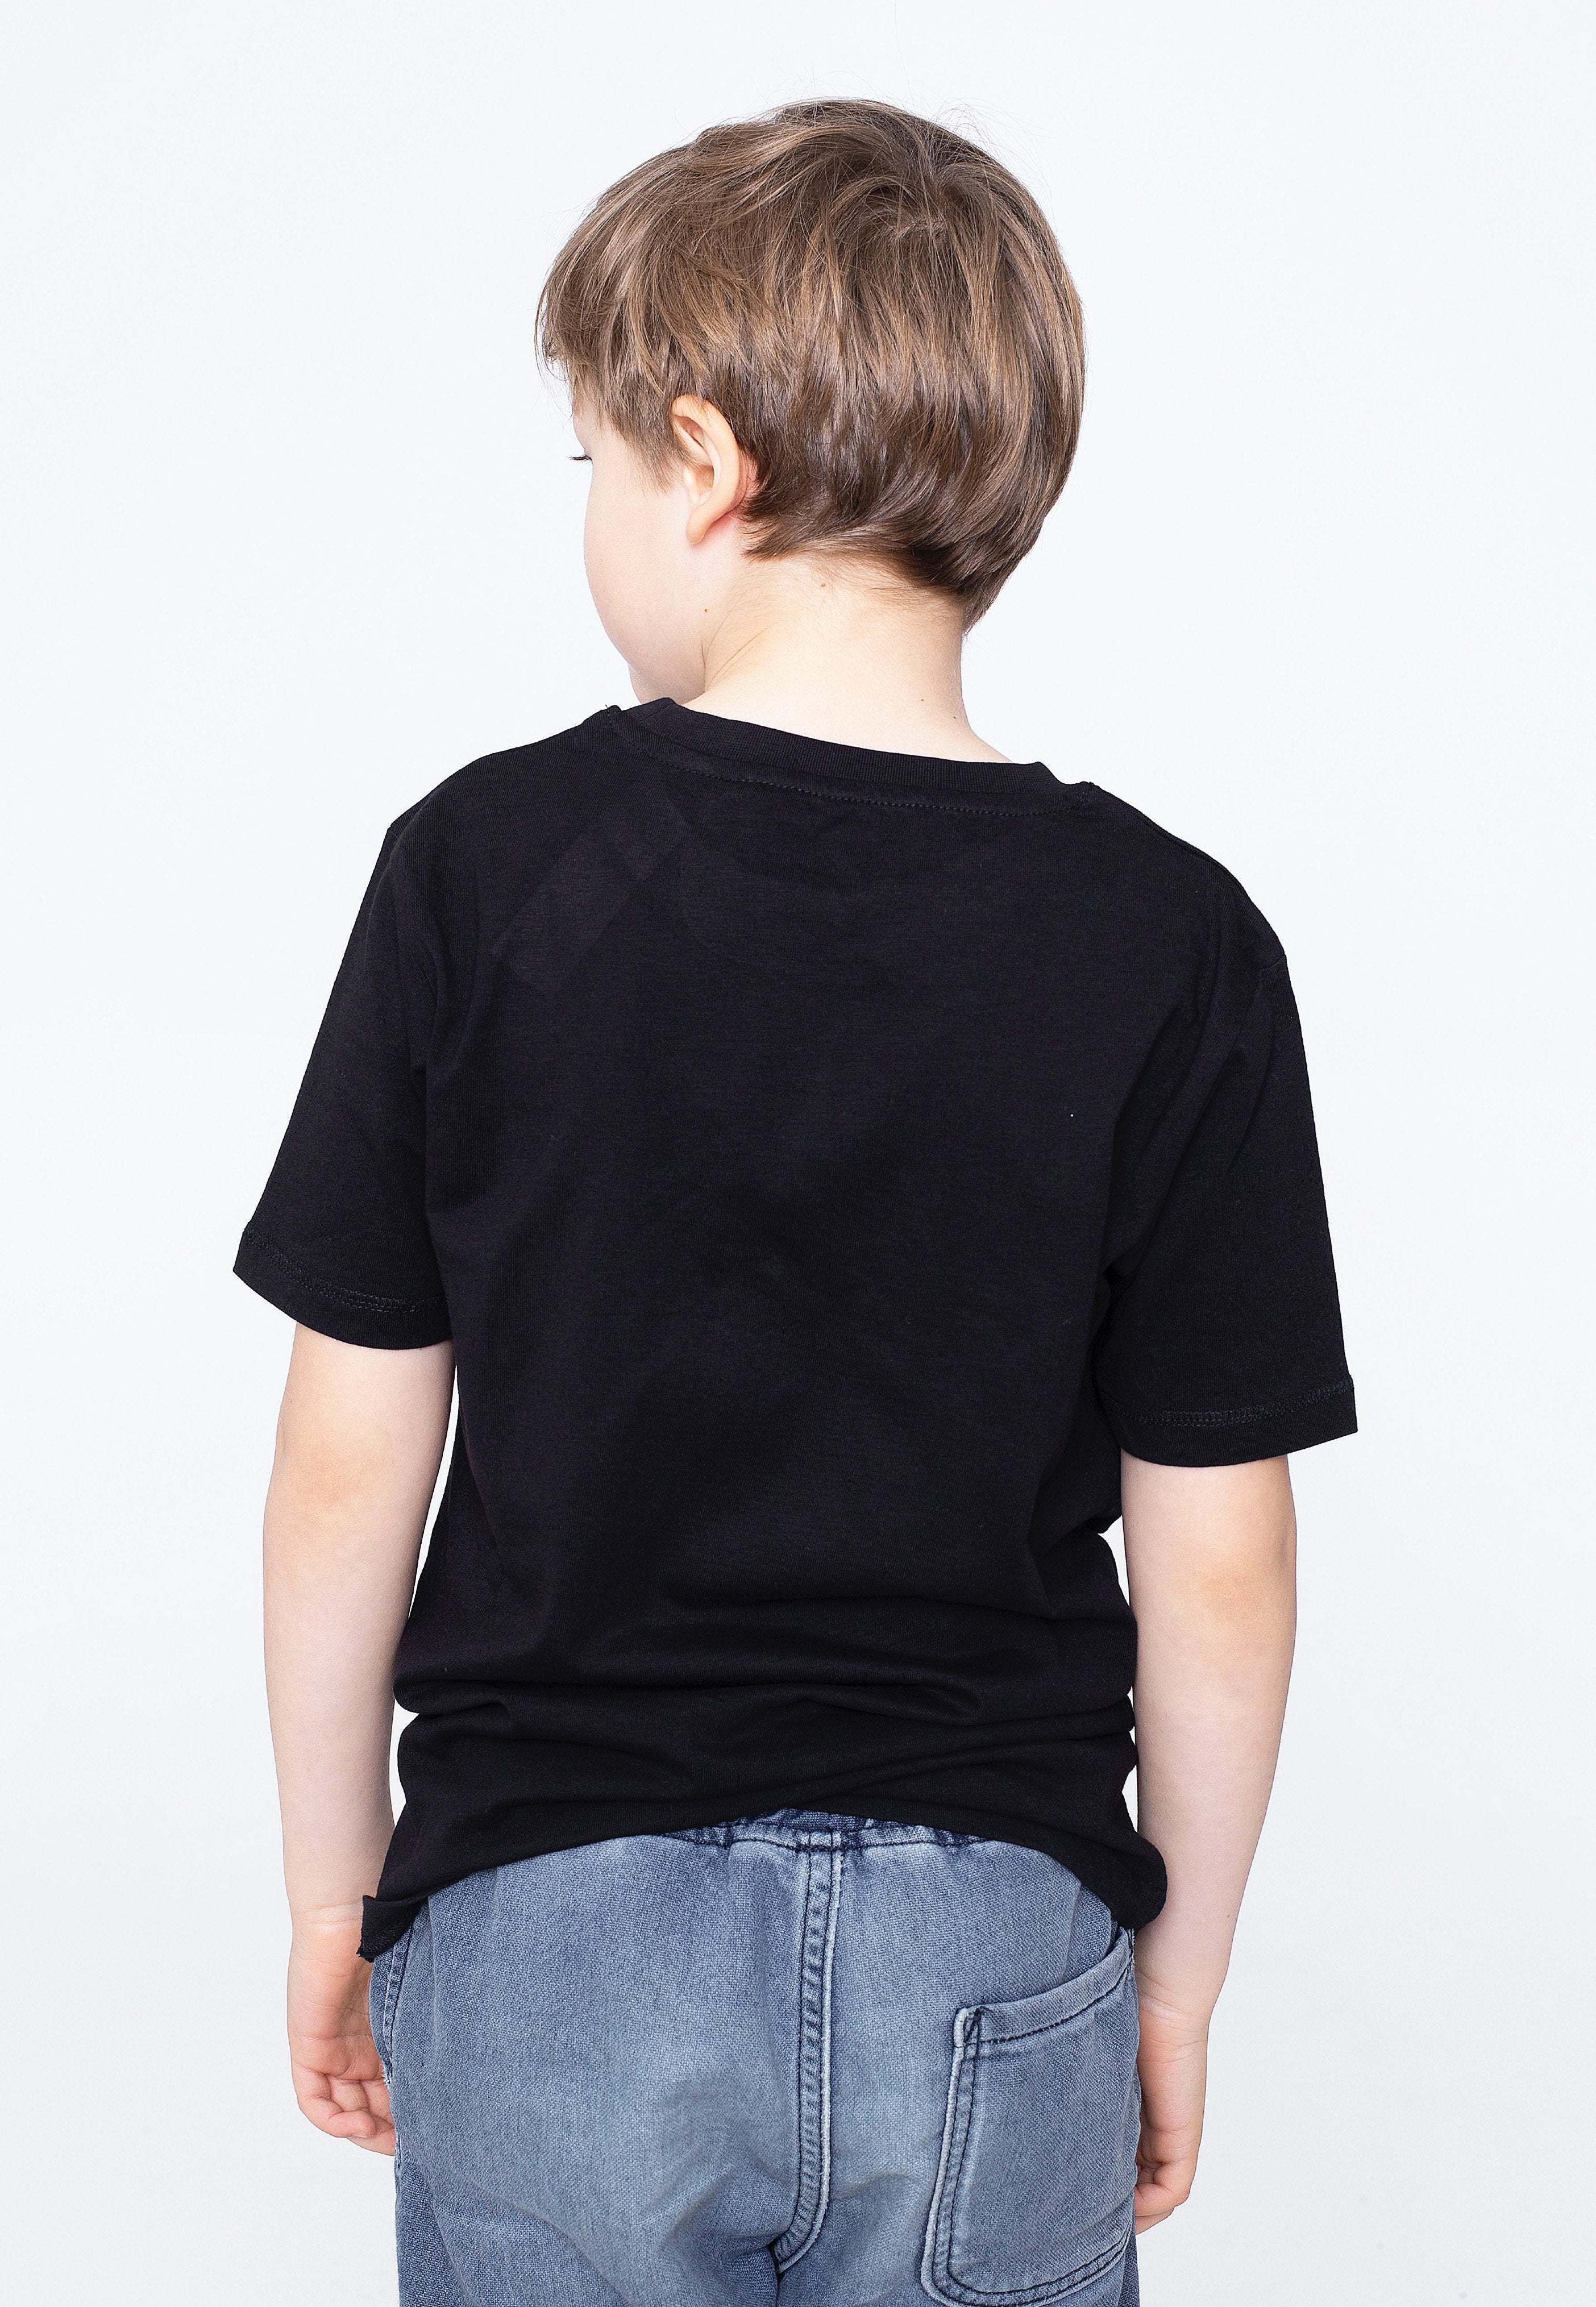 Gojira - Moon Phases Kids Black/White - T-Shirt